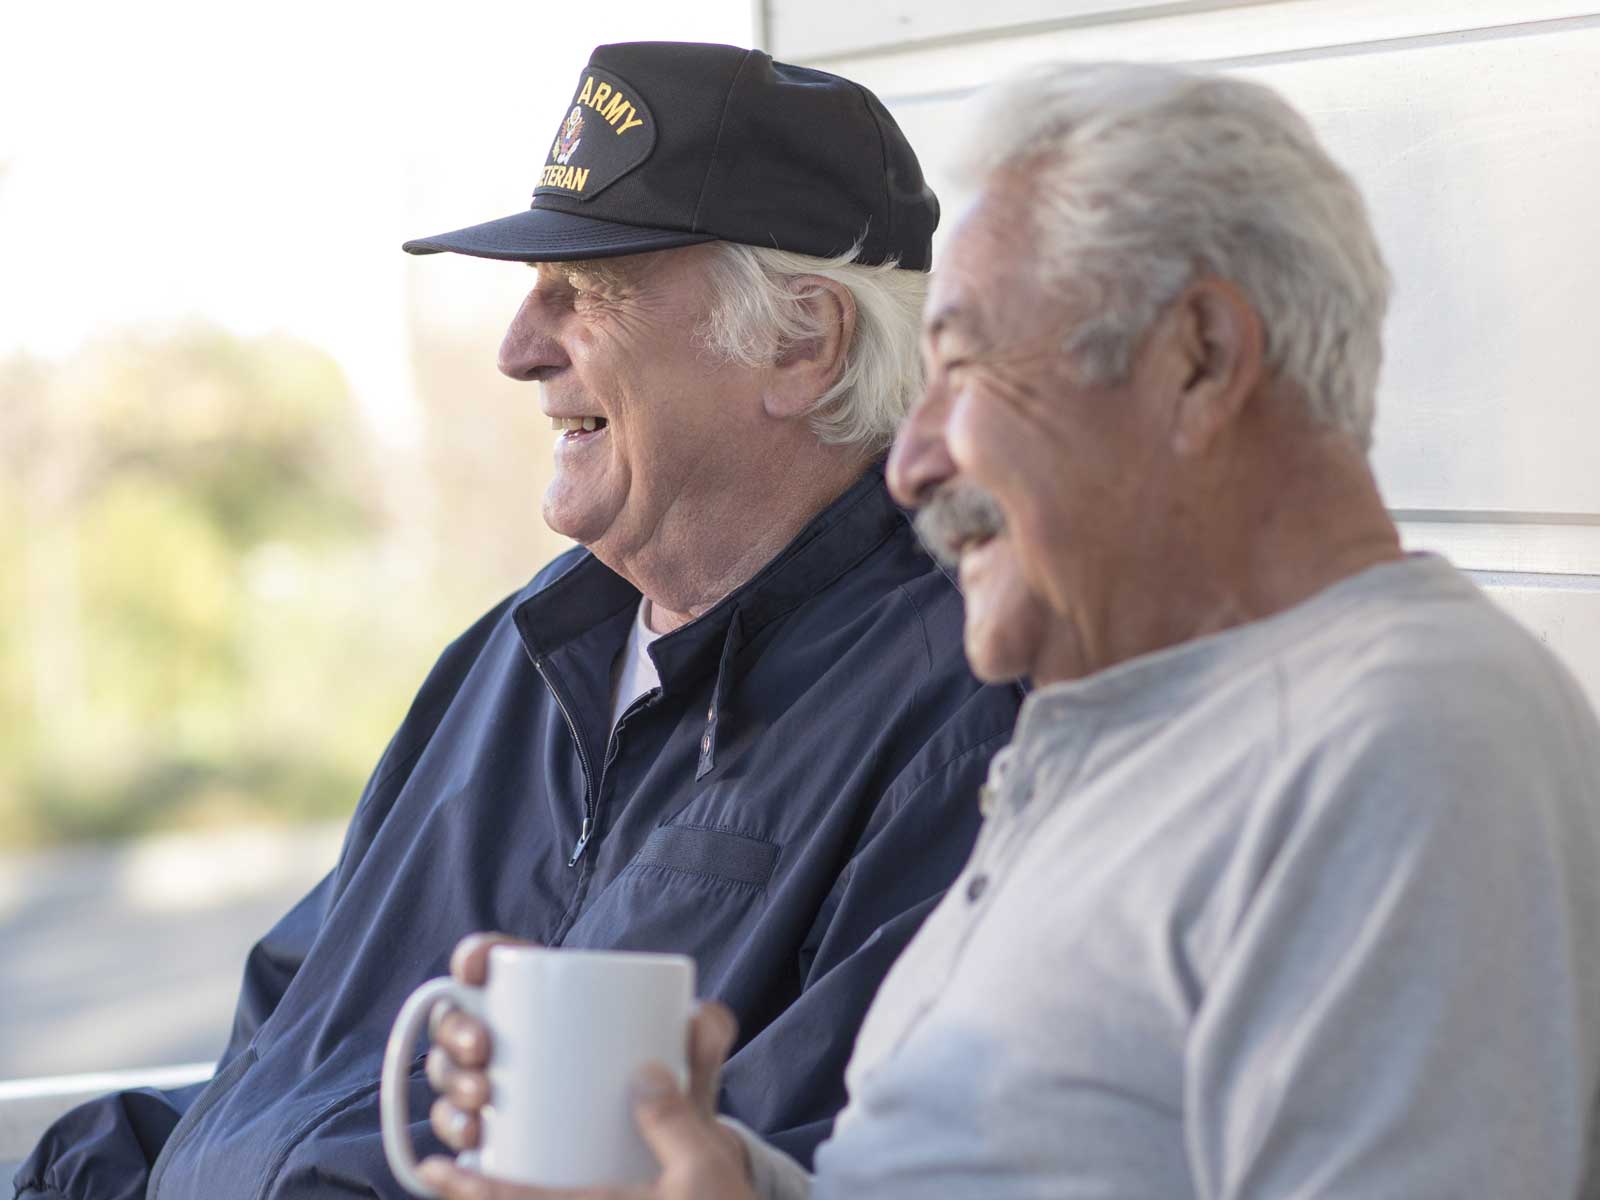 2 mayores sonriendo mientras beben su café. 1 de ellos tiene puesta una gorra con la leyenda "US Army Veteran."